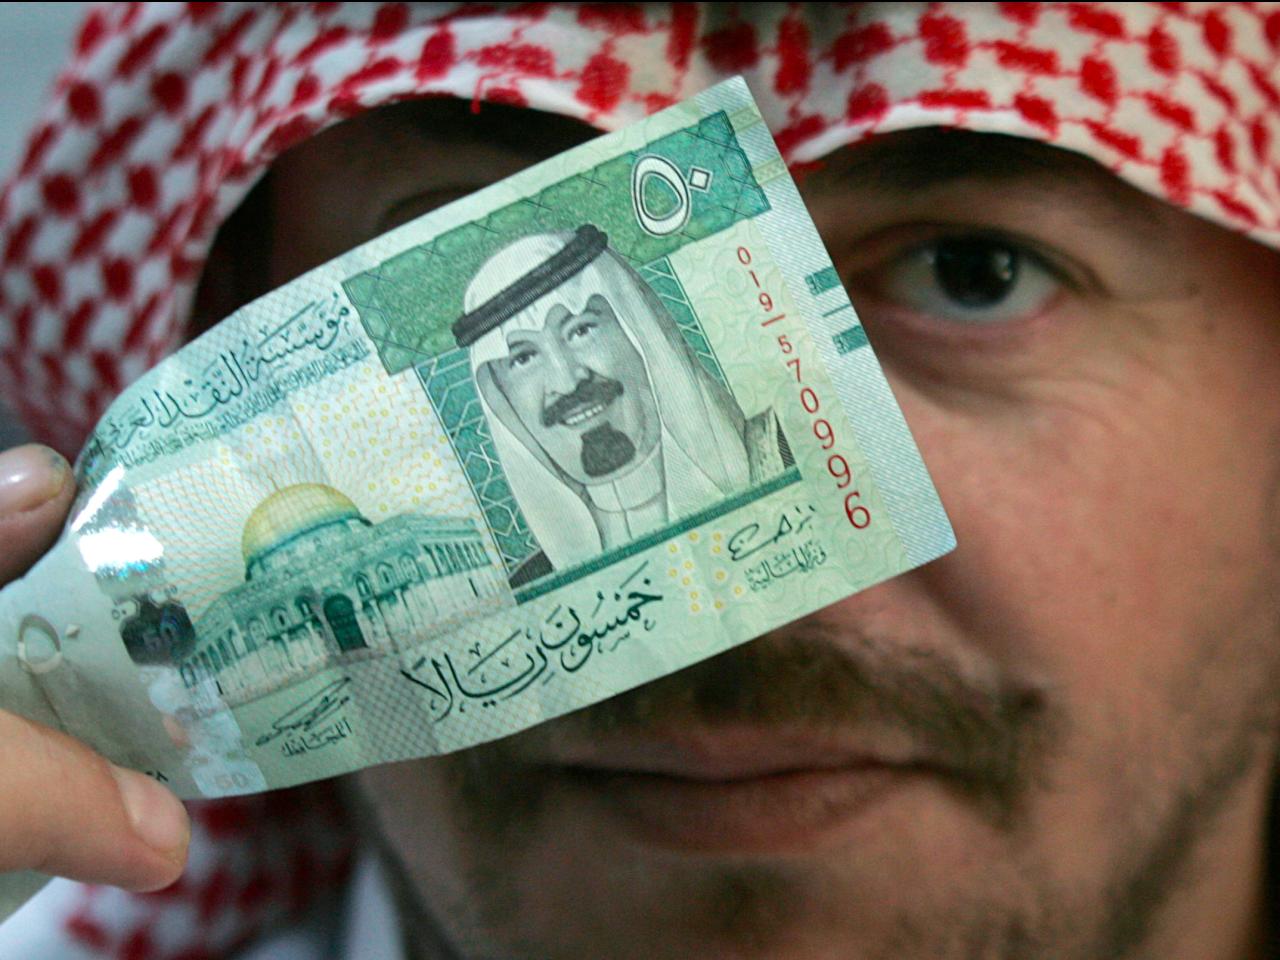 الرياض تمتلك 11% من أصول الصناديق السيادية بالعالم و"أبوظبي ثاني أكبر"